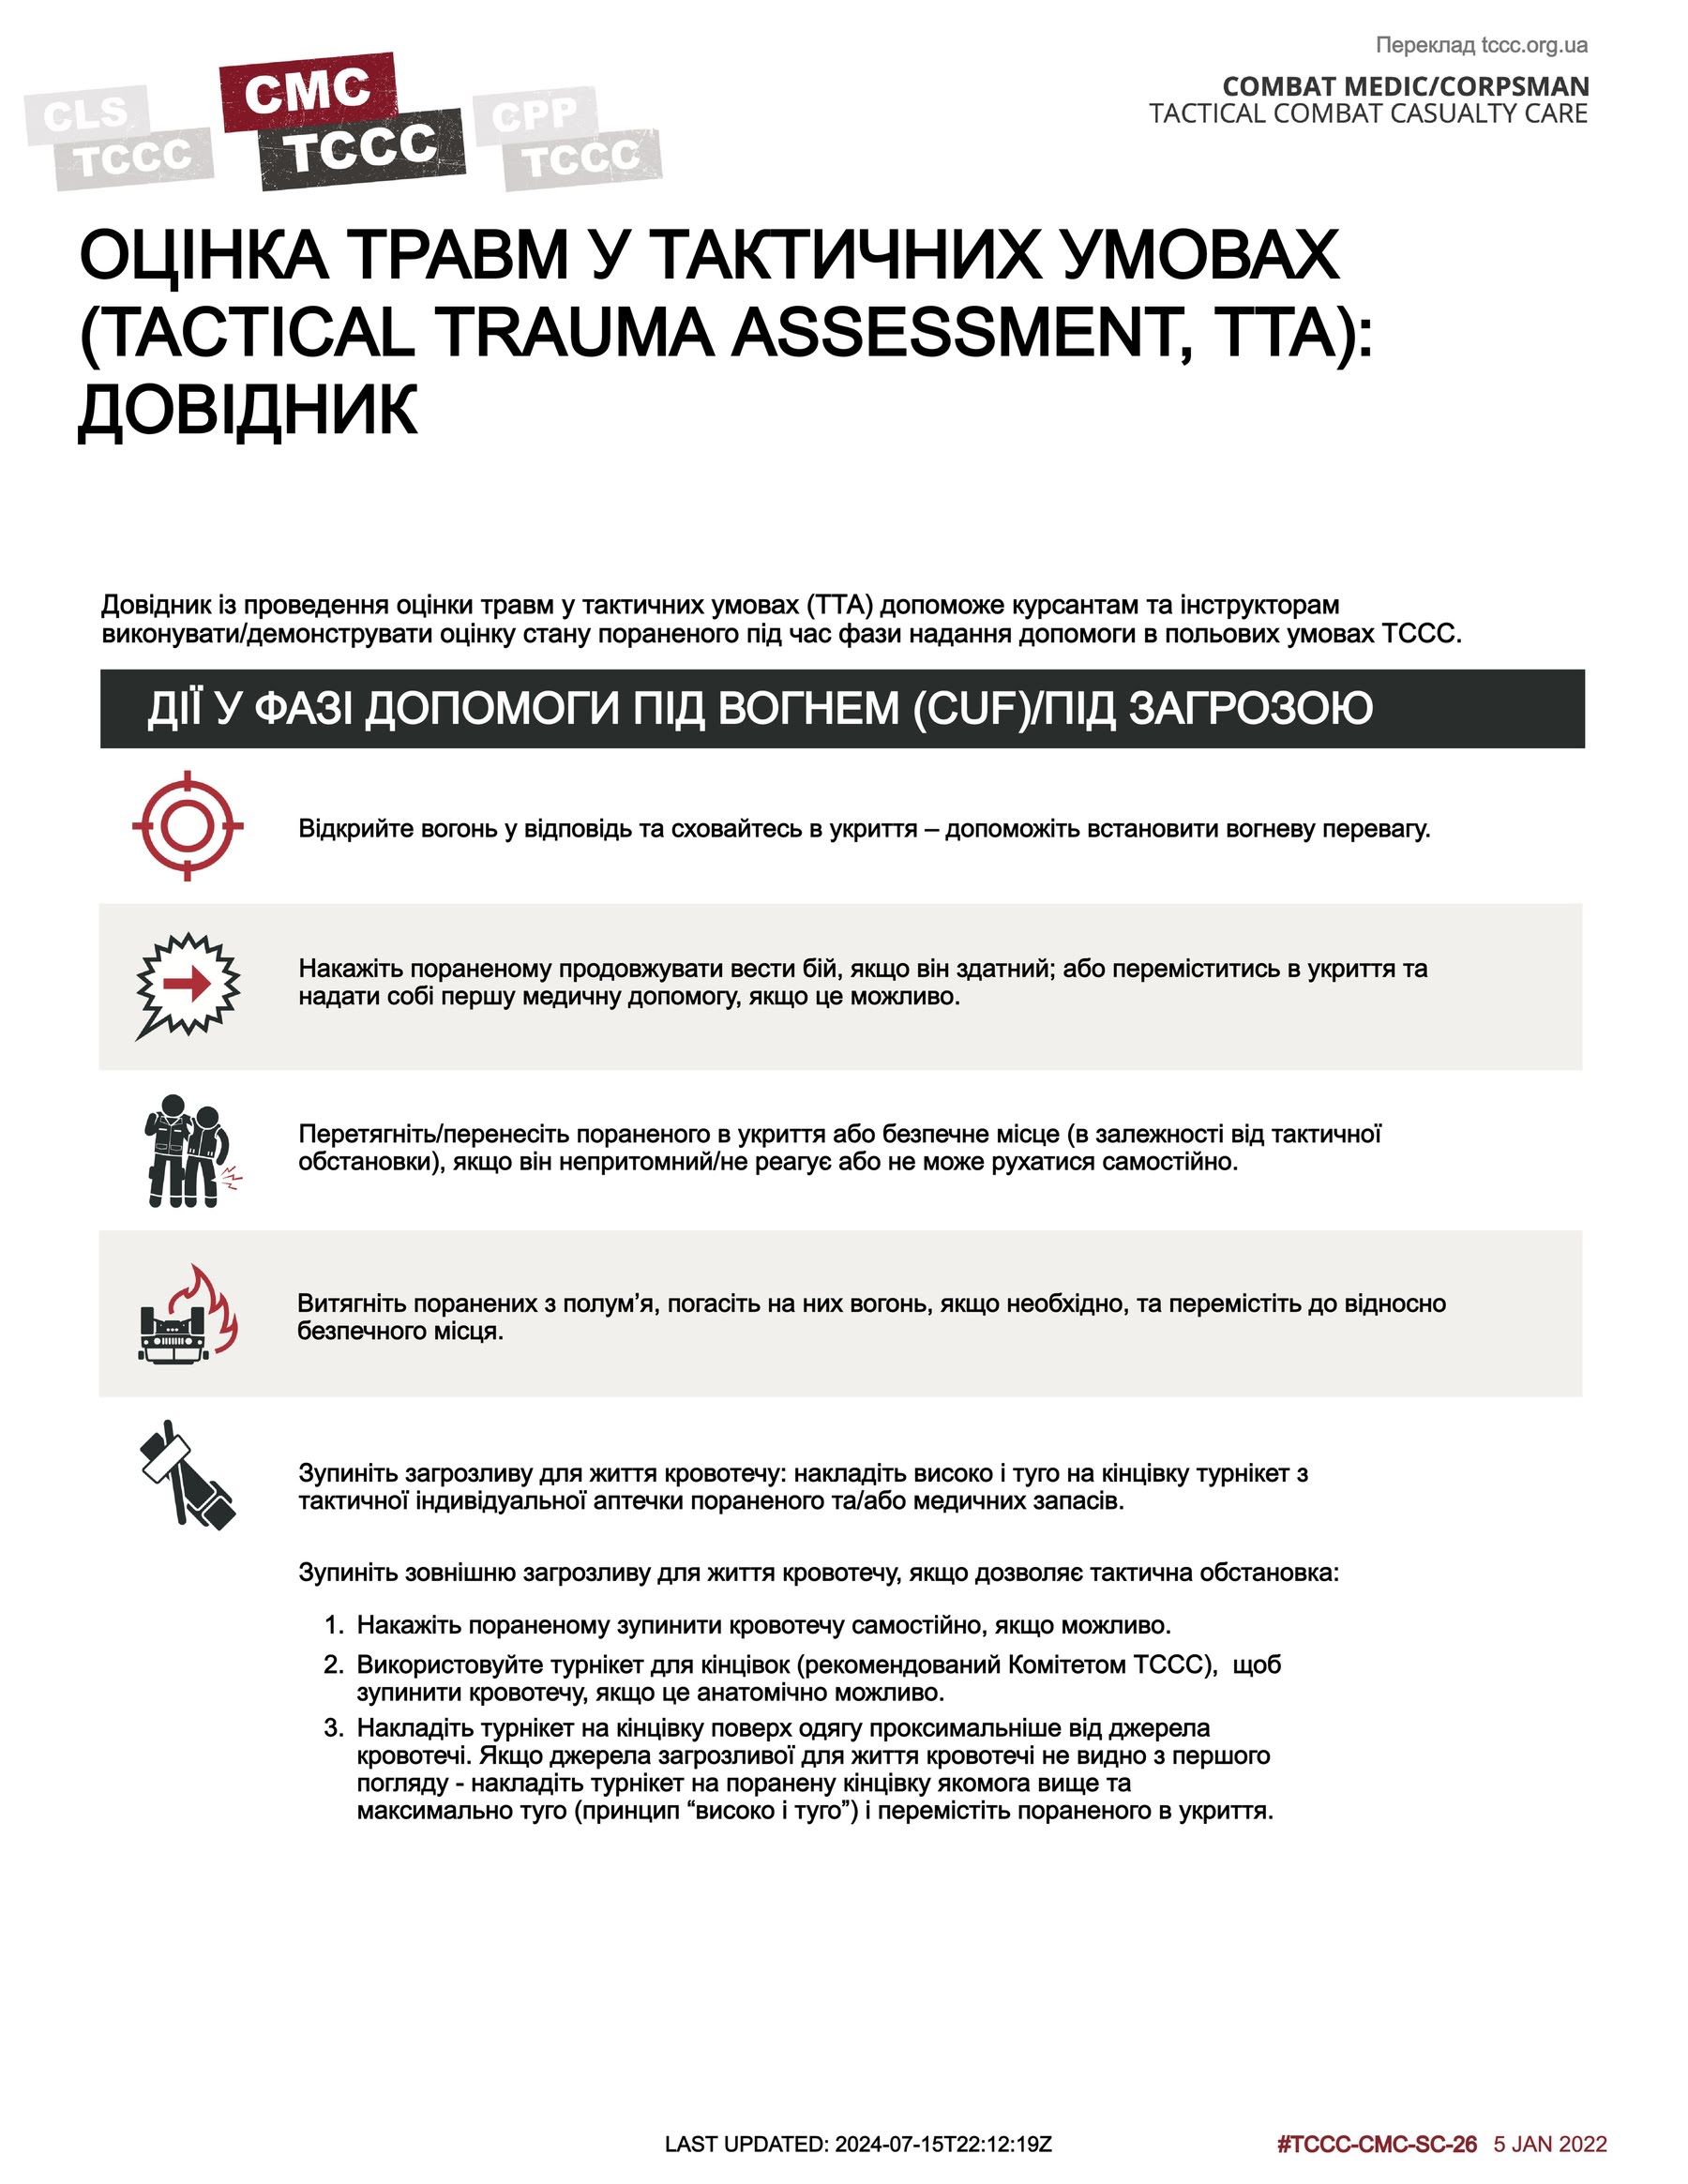 Оцінка травм у тактичних умовах: довідник, cmc, сторінка 1